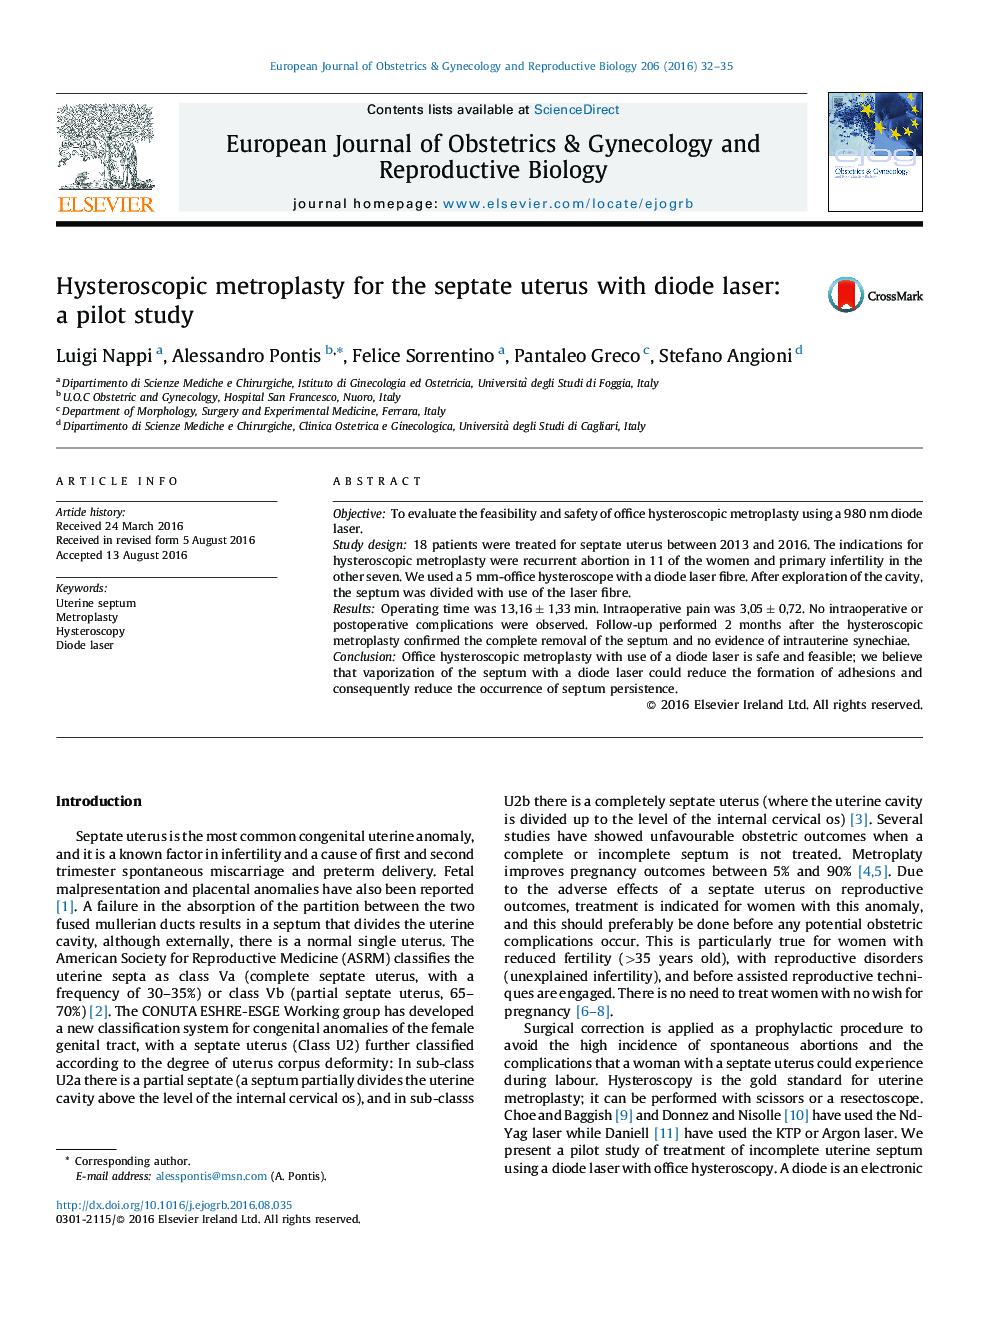 متروپلاستی هیستروسکوپی برای رحم سپتوم با لیزر دیود: یک مطالعه آزمایشی 